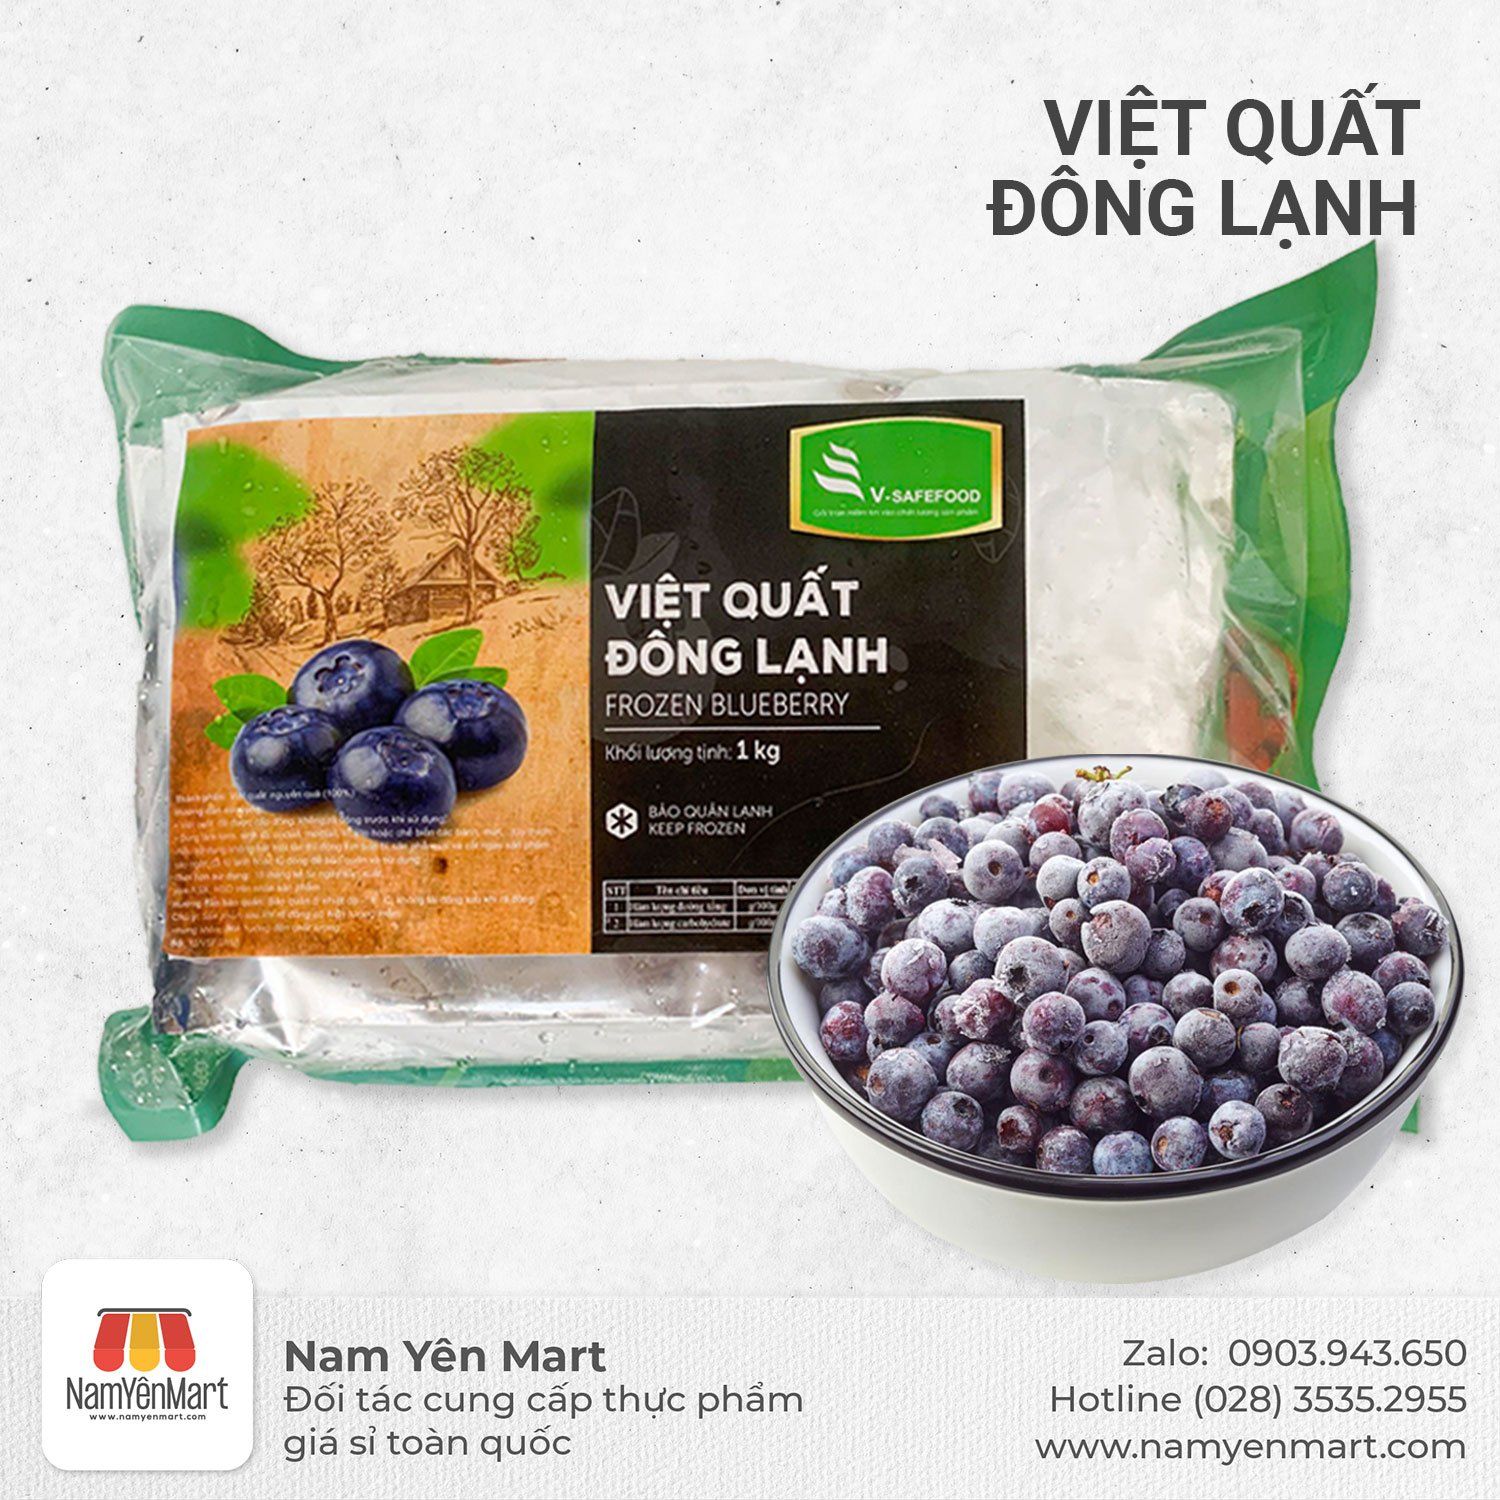  Việt Quất Đông Lạnh V-safefood 1kg 